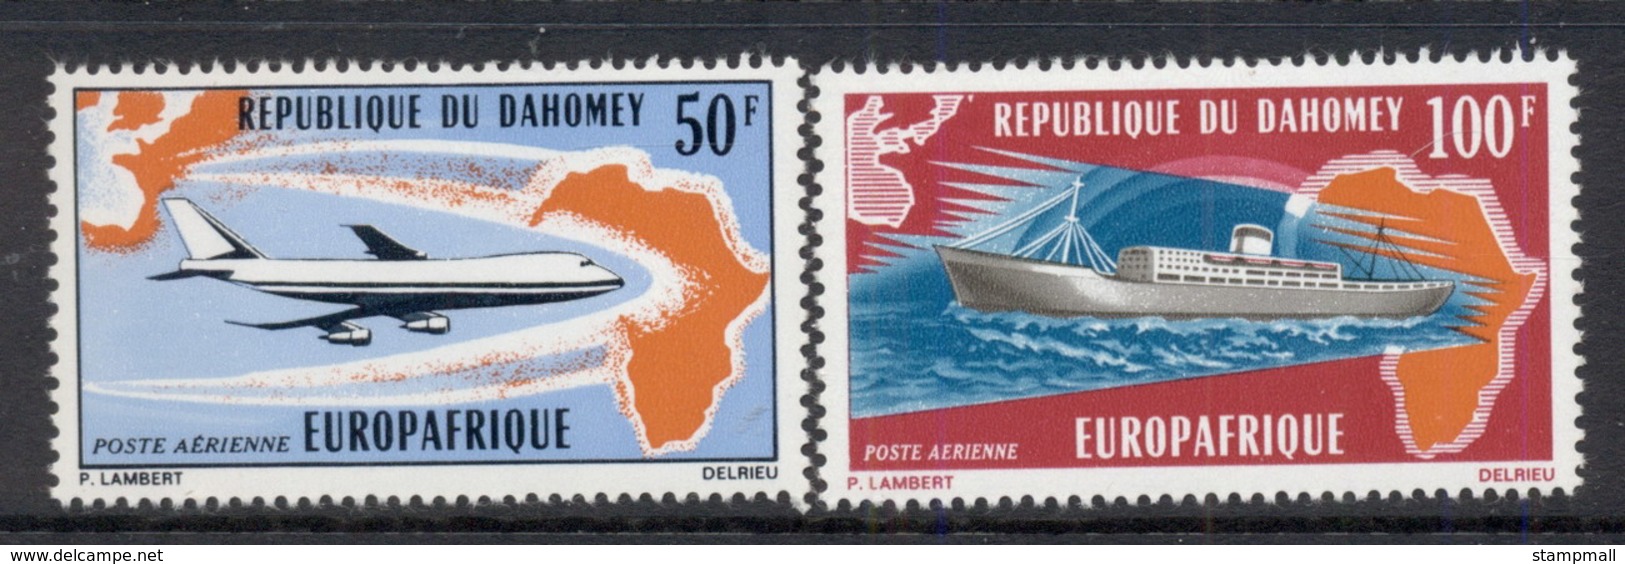 Dahomey 1971 Europafrica MUH - Benin – Dahomey (1960-...)